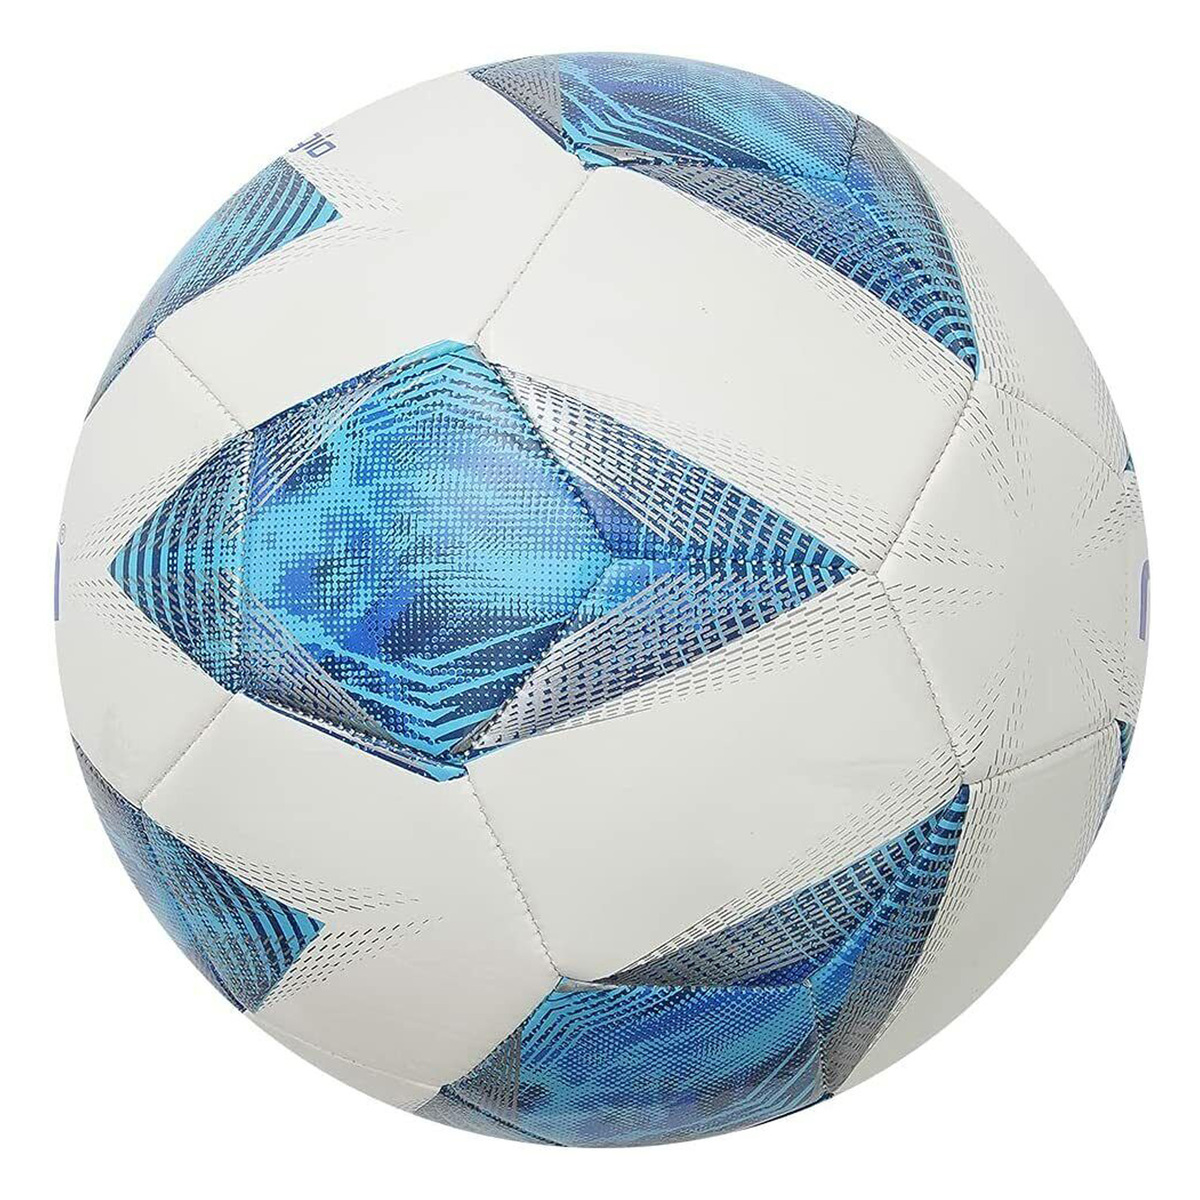 Molten Vantaggio Soccer Ball, Size 5, Blue and Silver, F5A1000